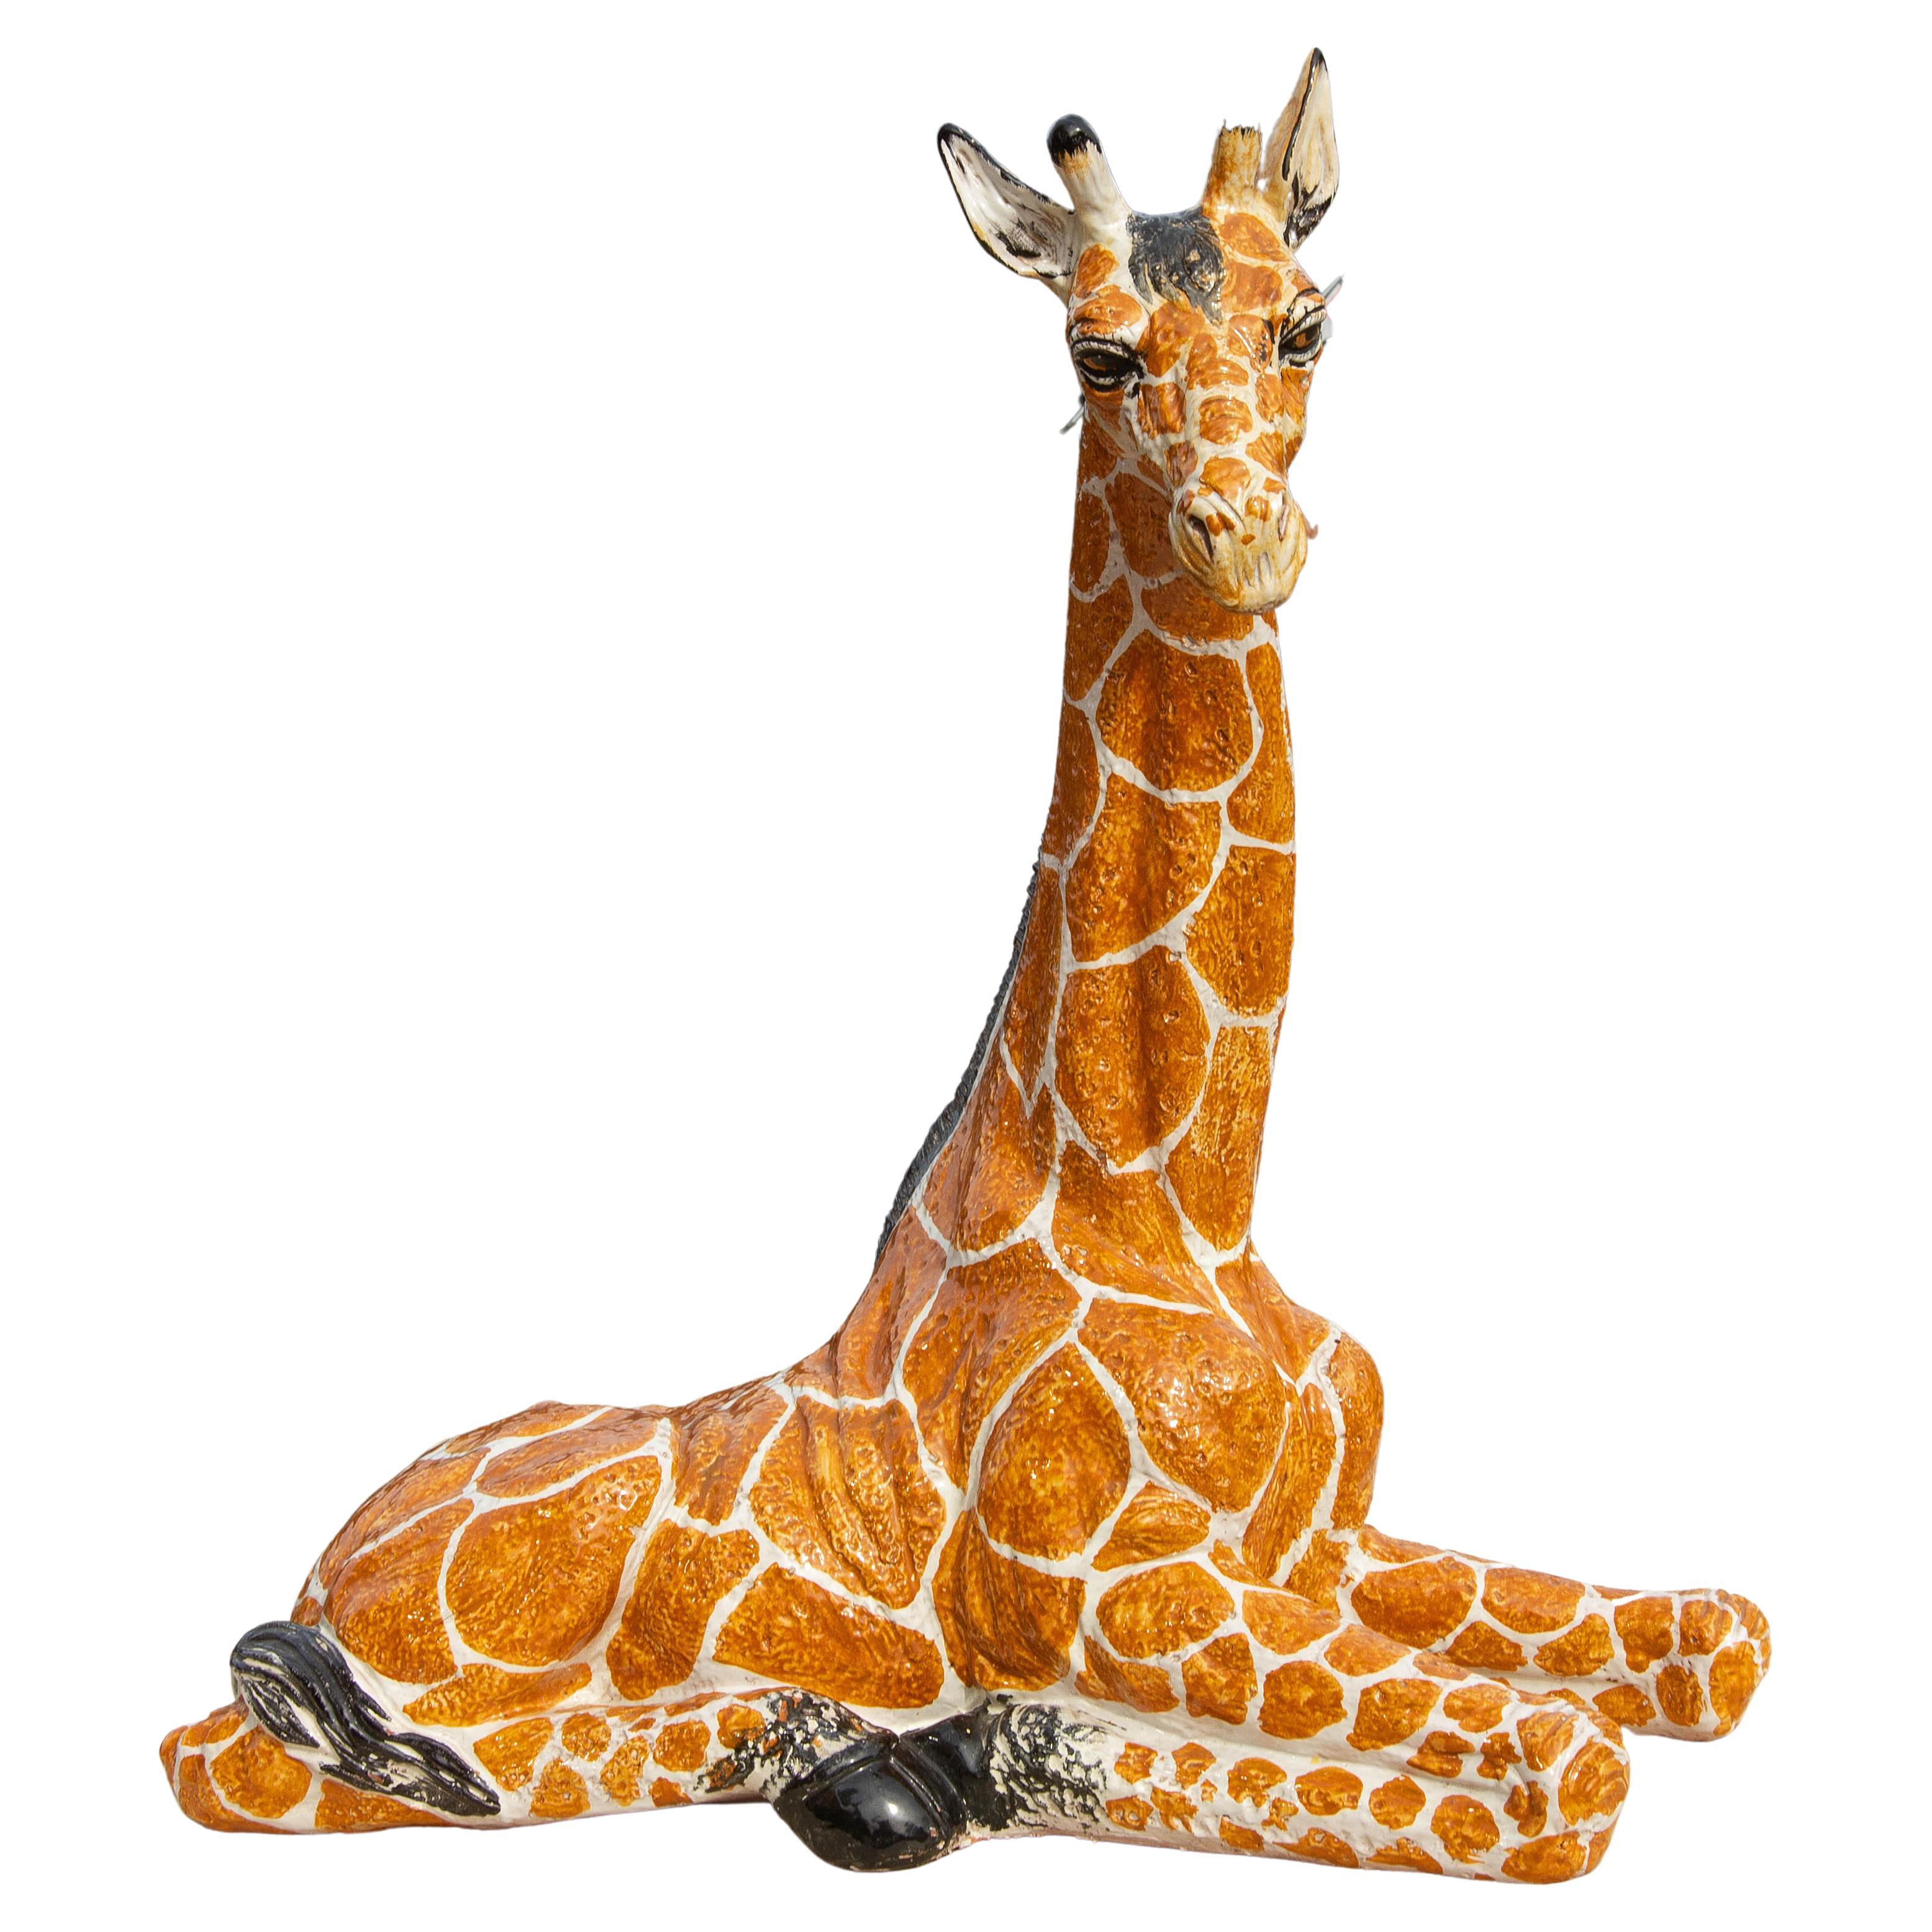 Large Italian glazed terracotta giraffe. Mid-20th century. Italian.